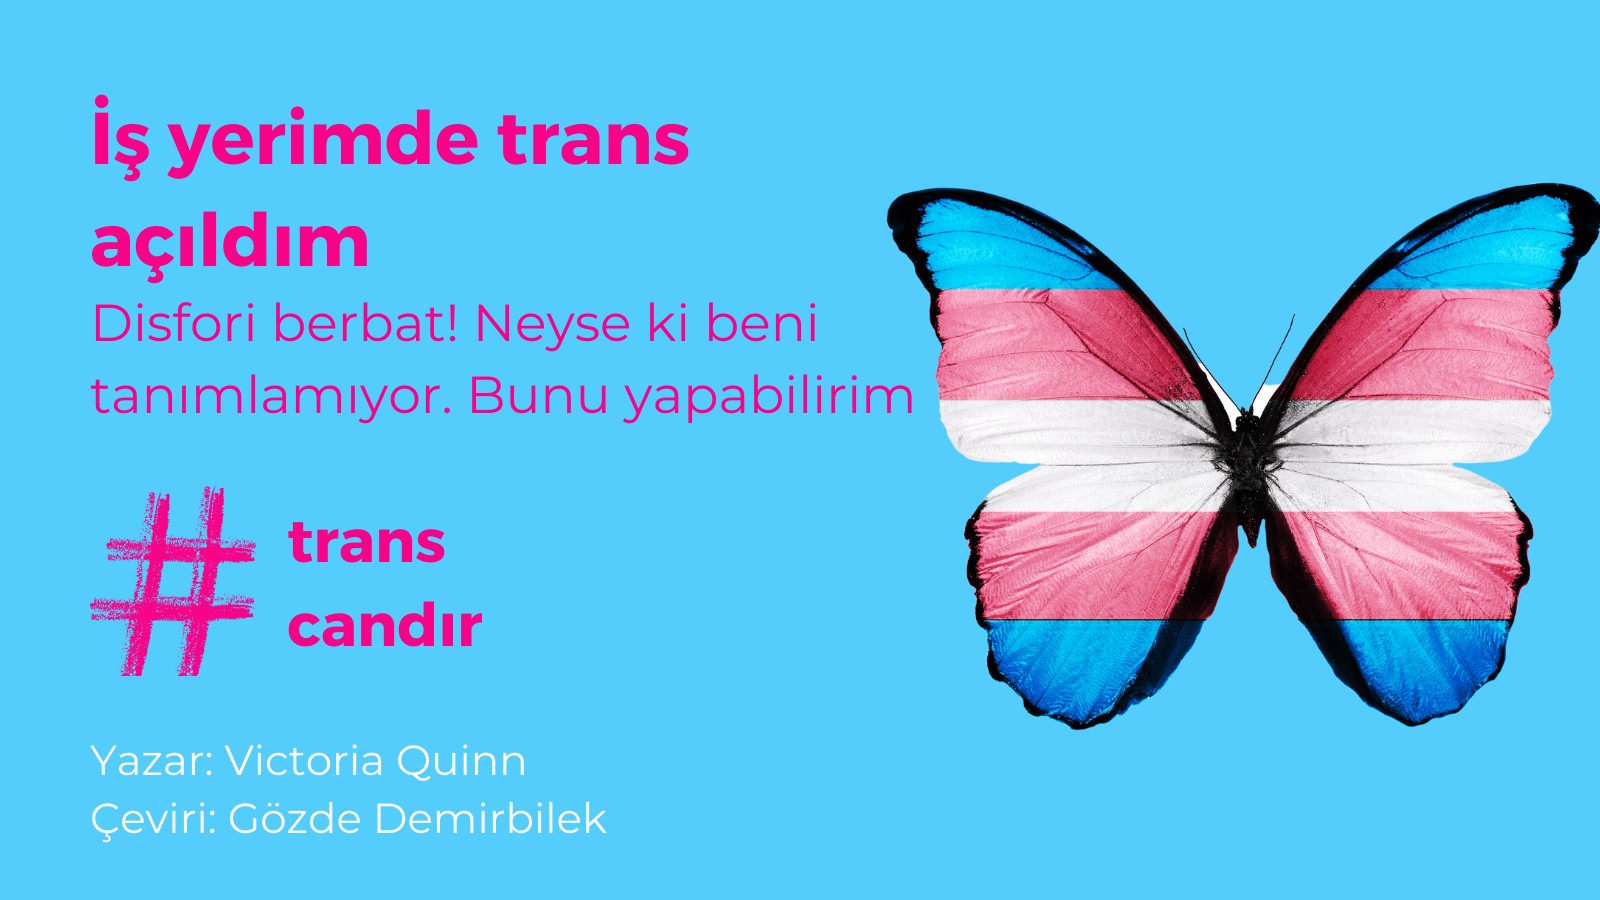 İş yerimde trans açıldım Kaos GL - LGBTİ+ Haber Portalı